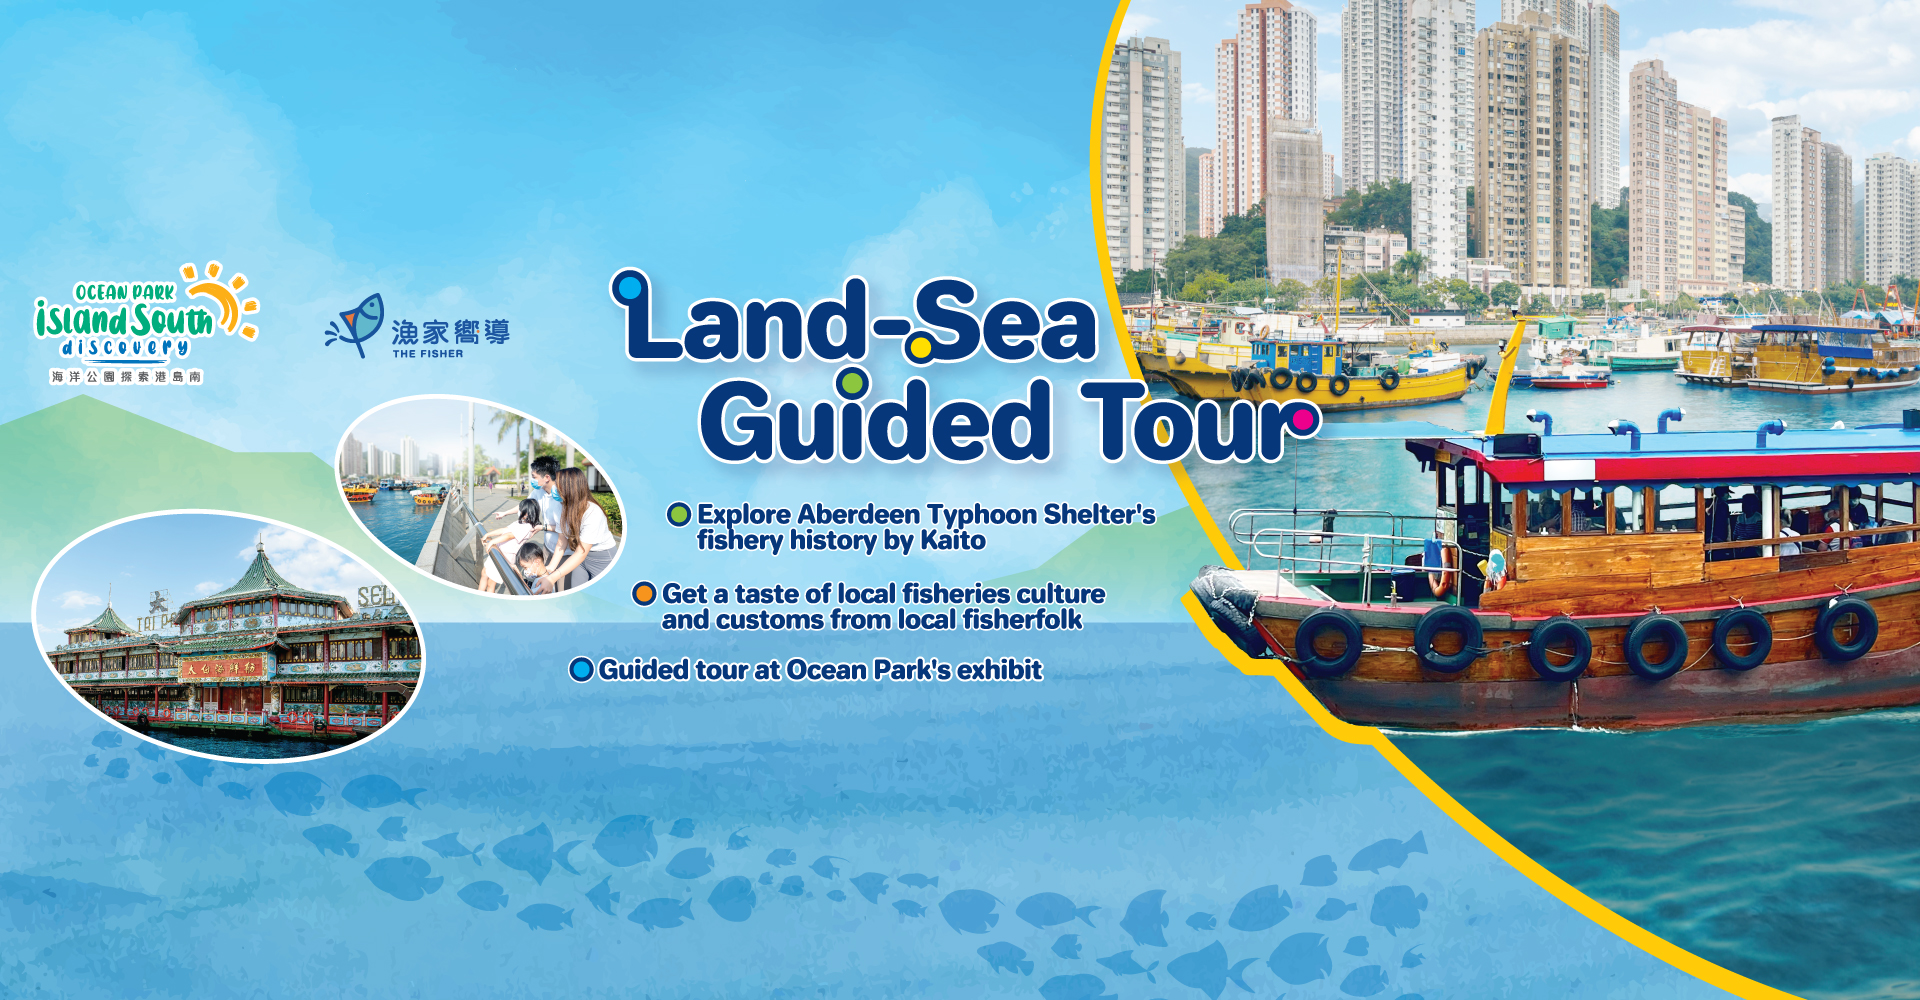 https://media.oceanpark.cn/files/s3fs-public/land-sea-guided-tour-innerpage-banner-desktop-en.jpg